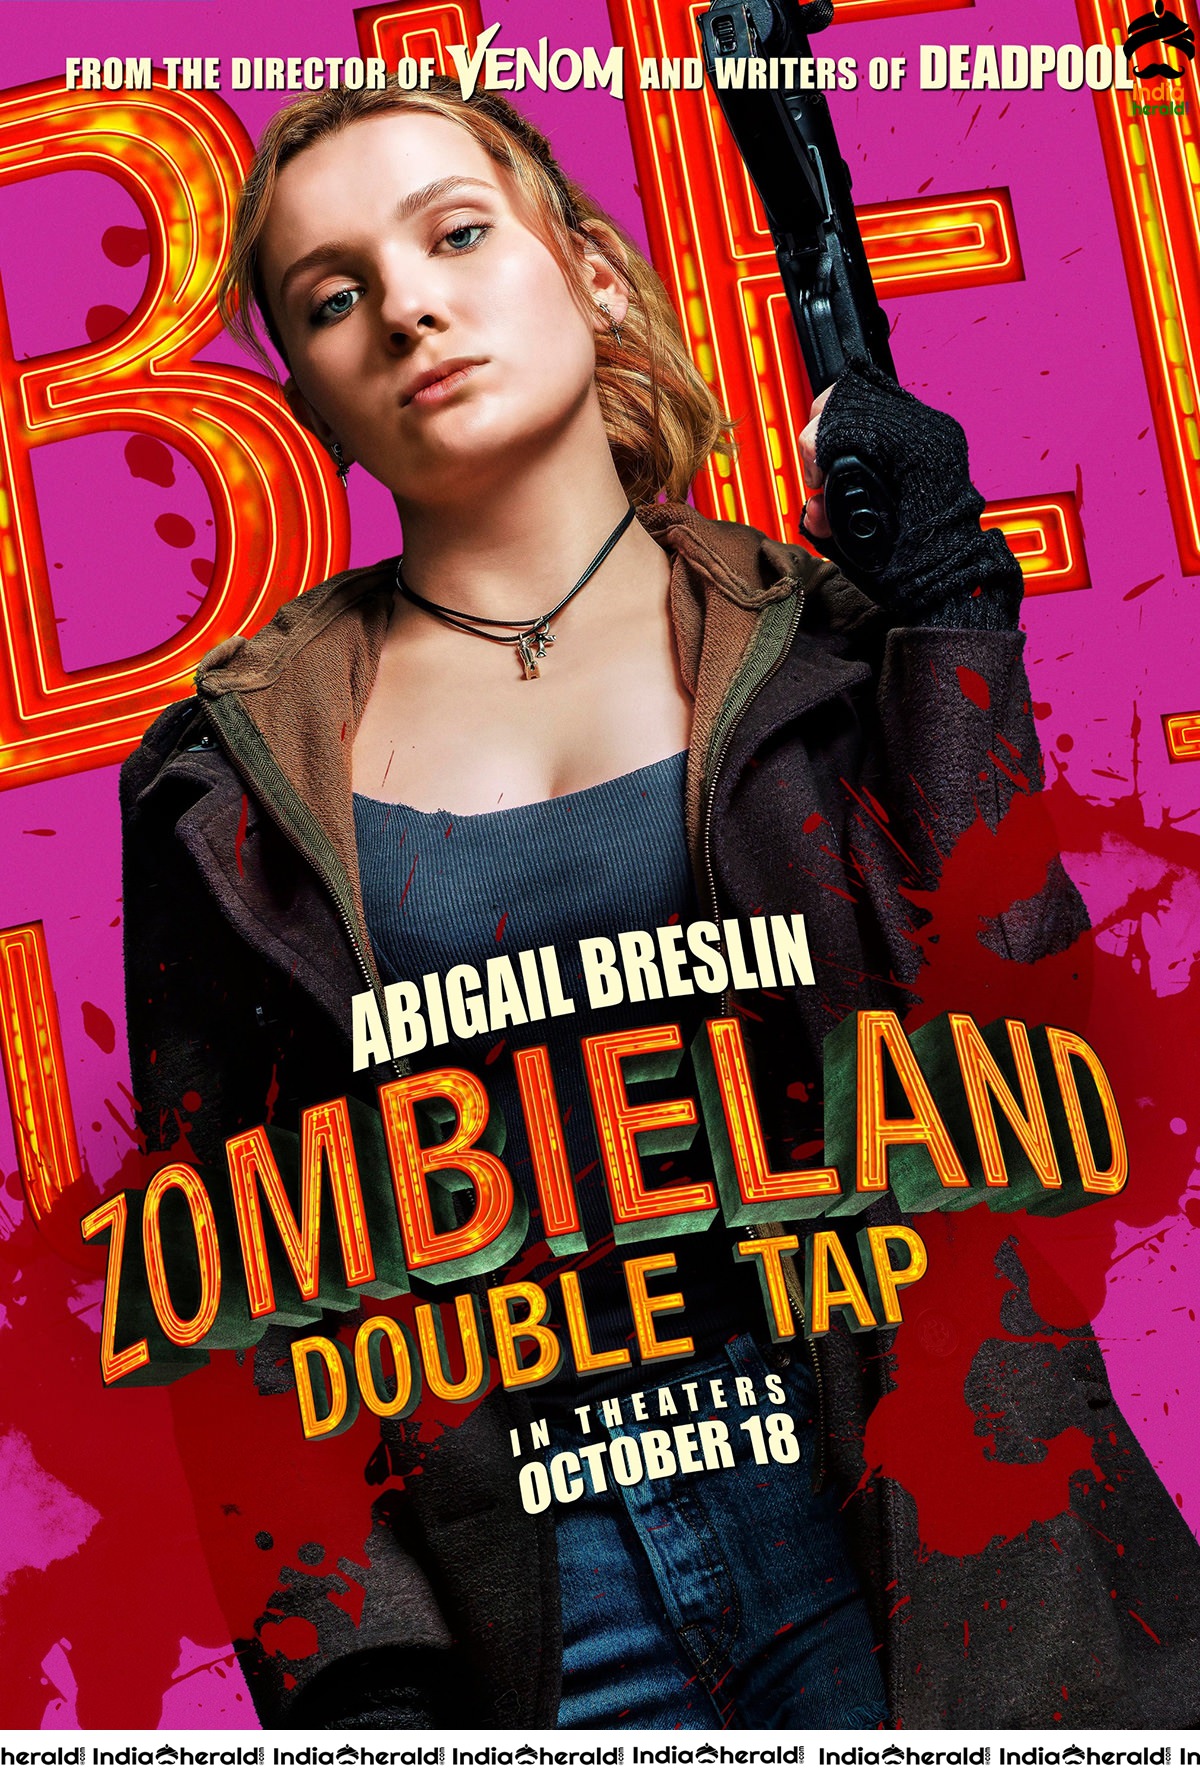 Zombieland 2 Unseen Character Poster Stills